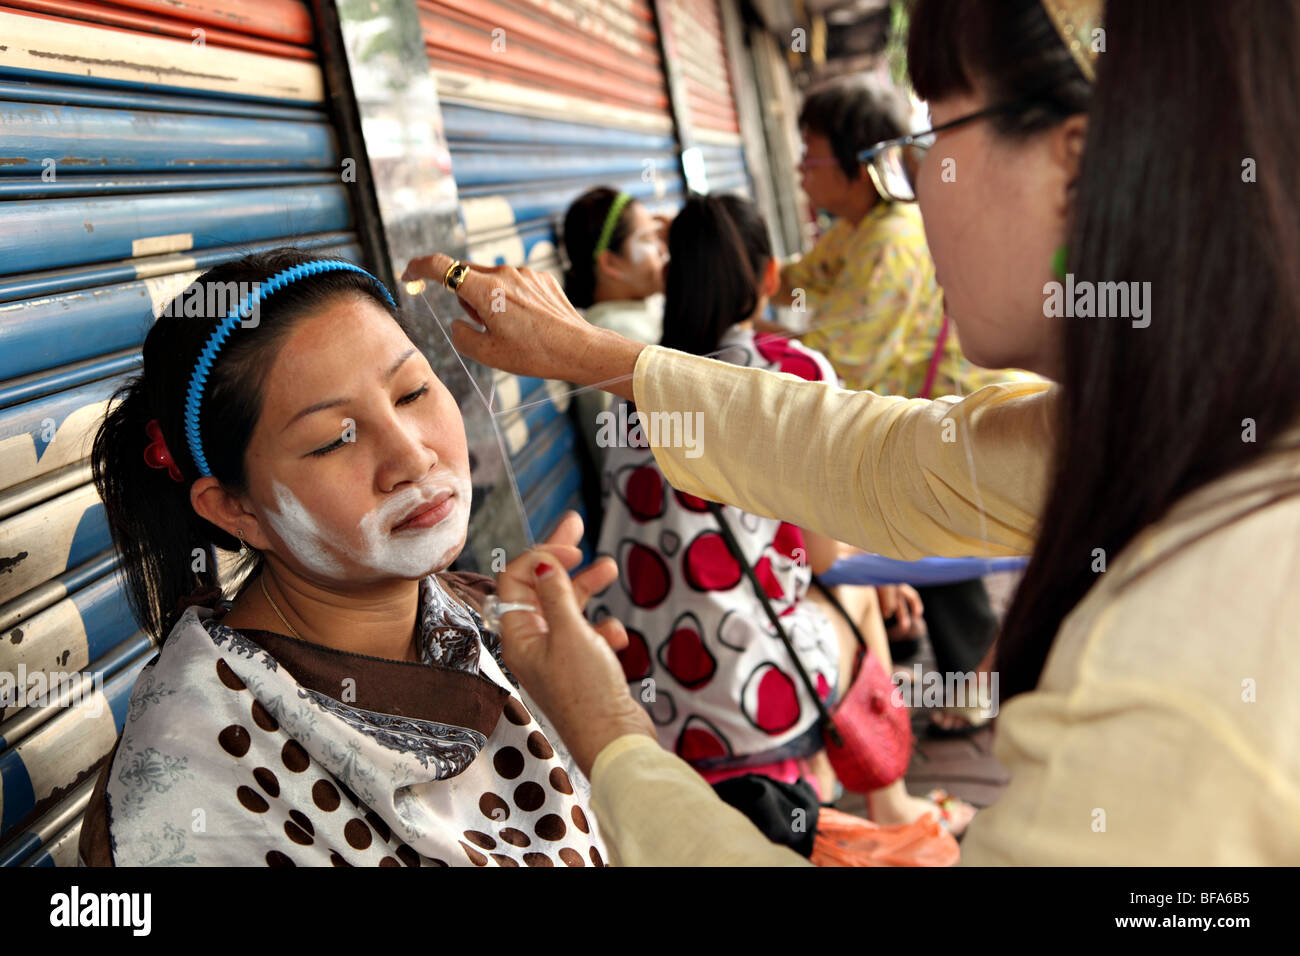 Thai Frauen Bekommen Ihre Haare Im Gesicht Rasiert Auf Bangkok Straße Stockfotografie Alamy